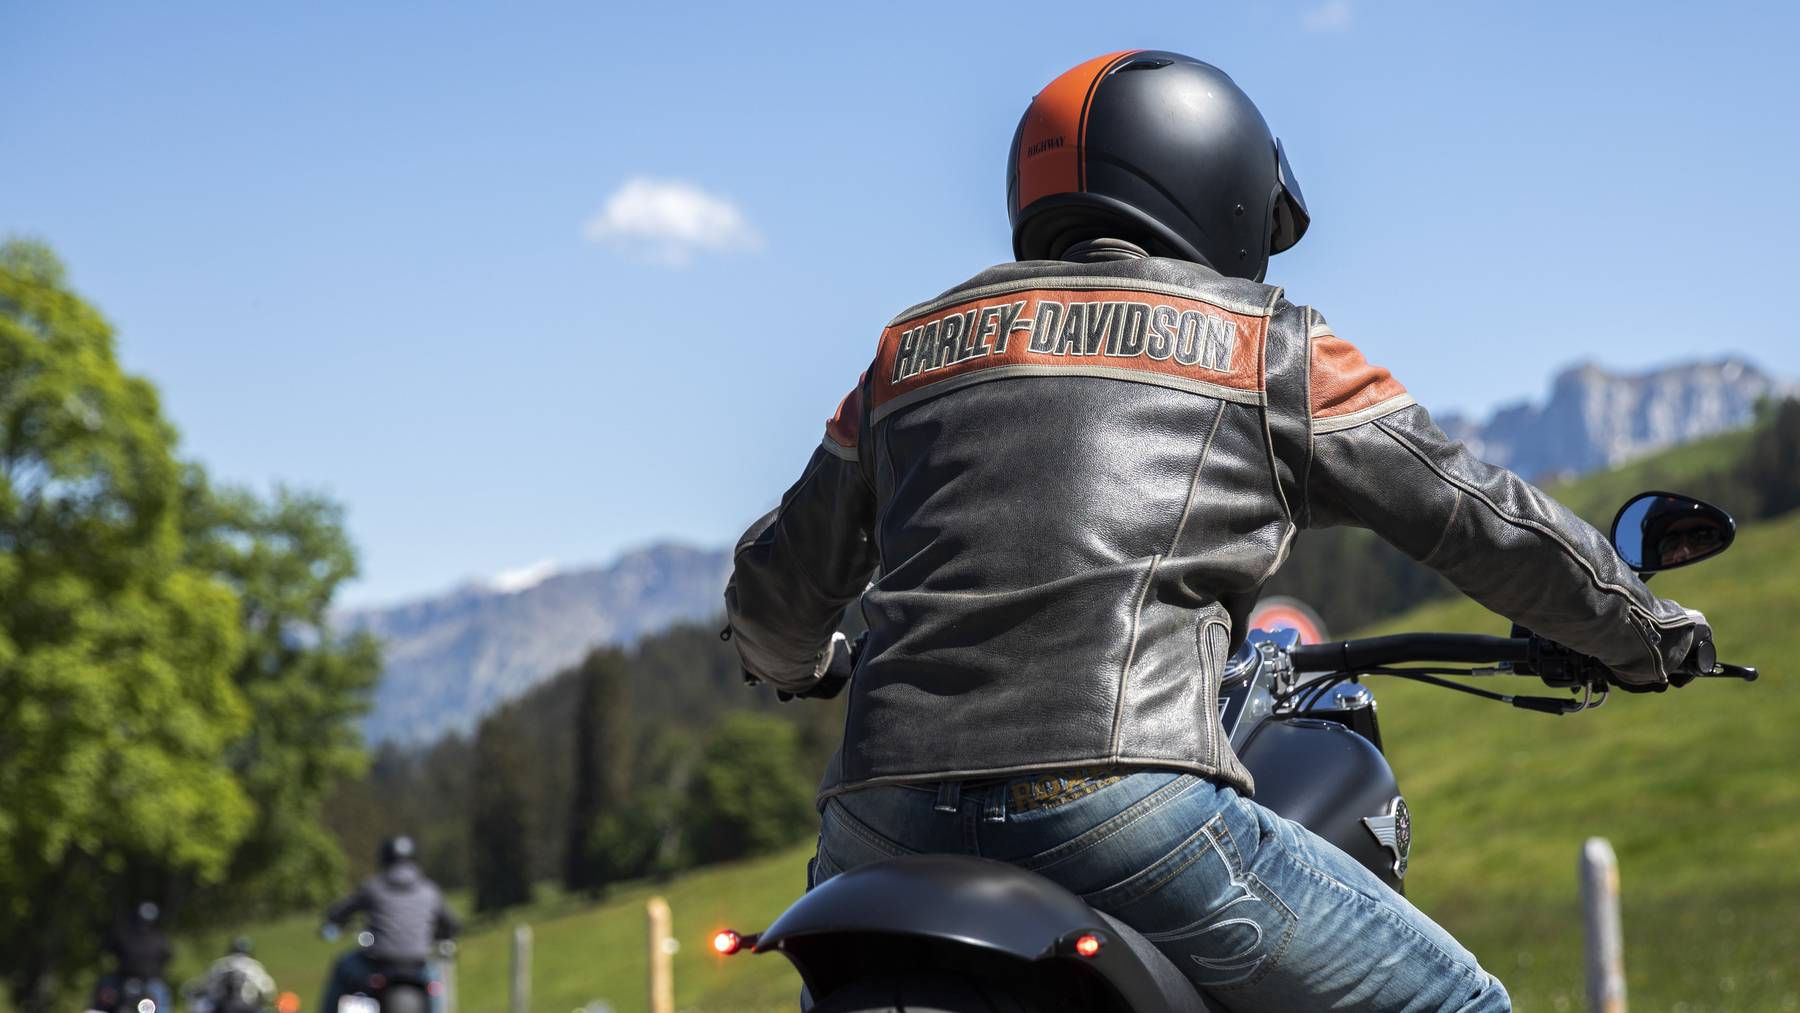 Lederbekleidung ist für Motorradfahrer empfehlenswert, Flip-Flops hingegen ein No-Go.